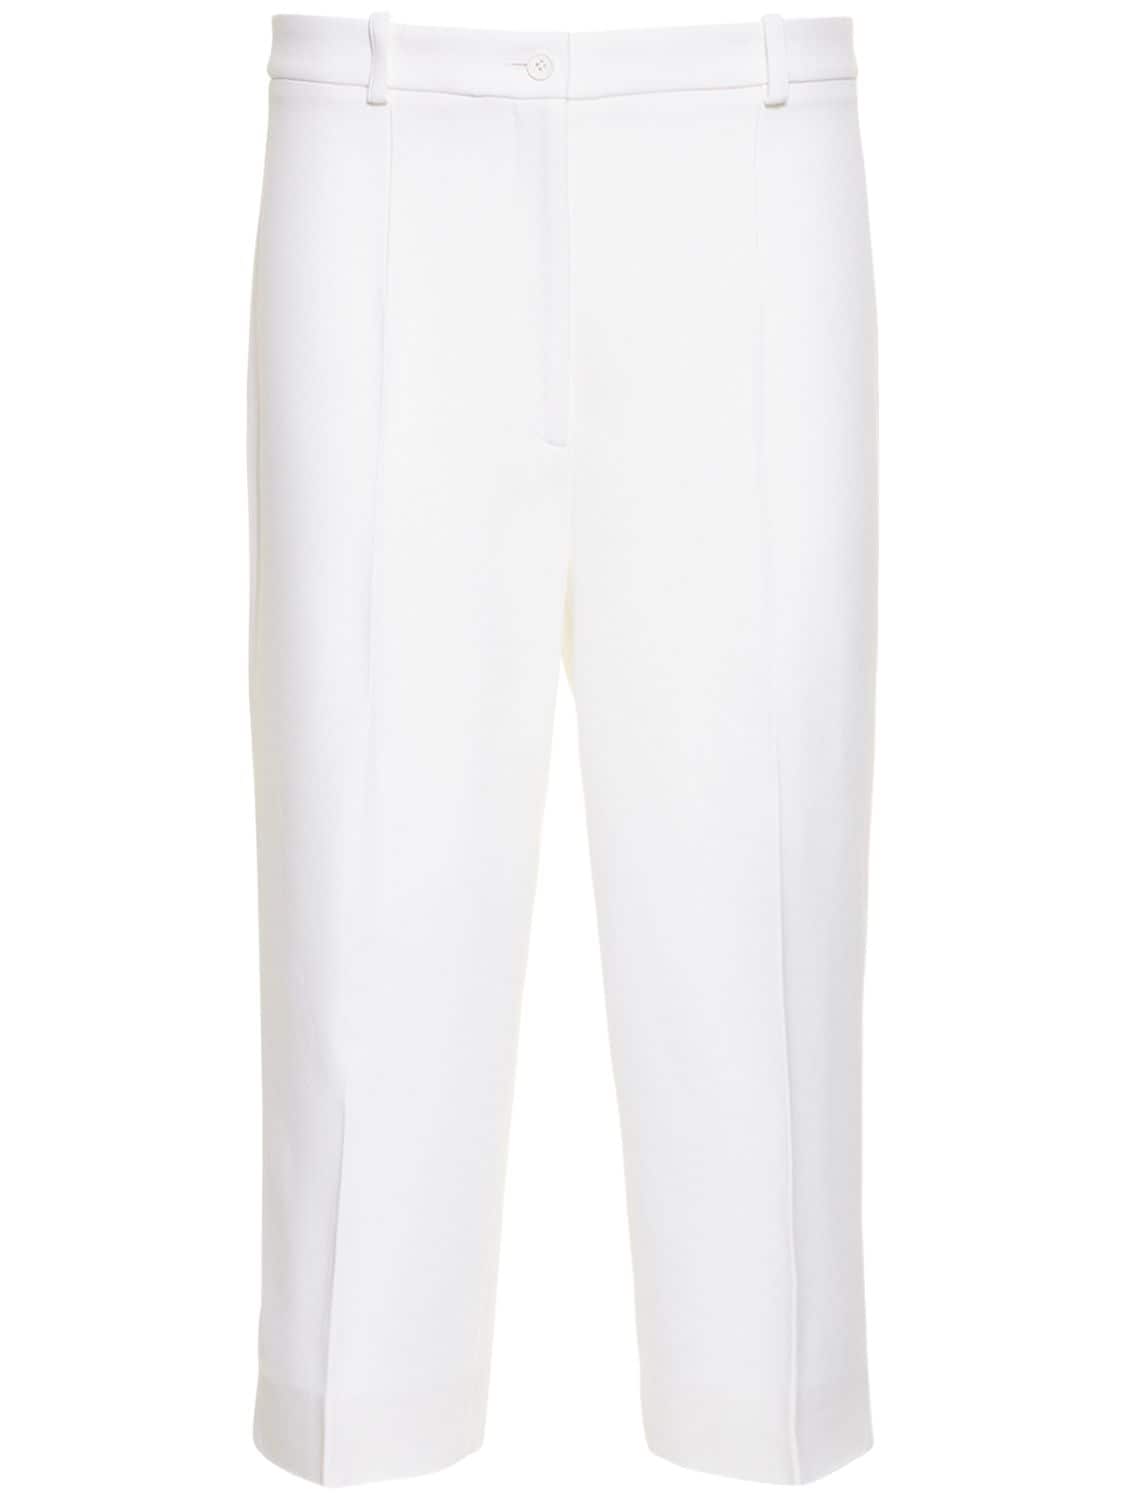 MICHAEL KORS DOUBLE CREPE SABLÉ HIGH-WAIST trousers